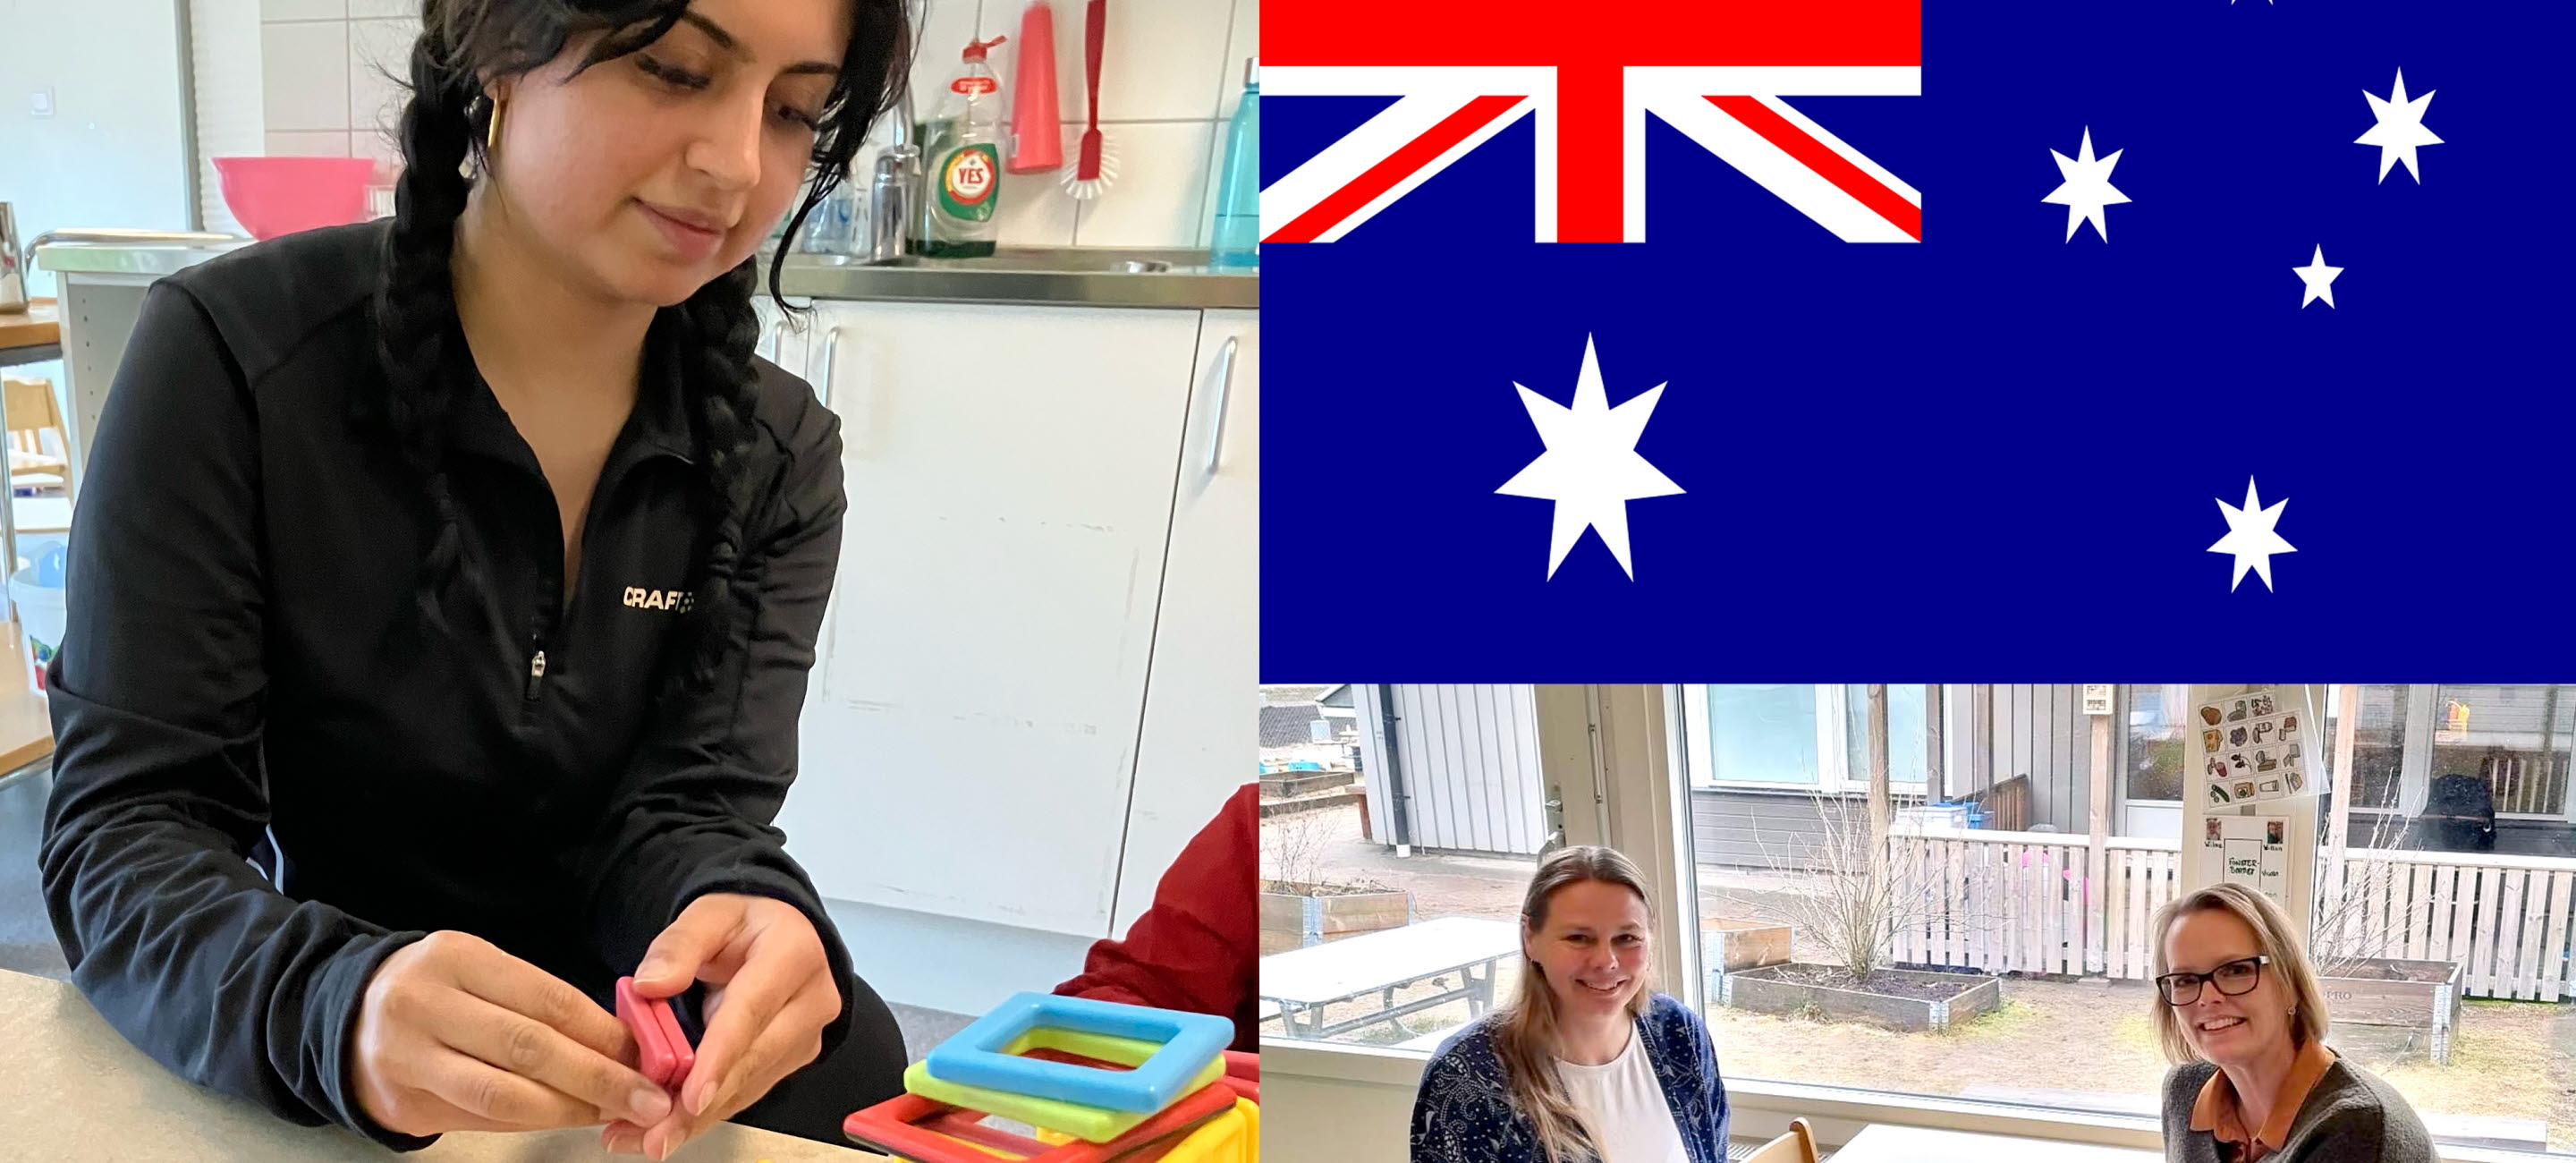 Flicka som pysslar vid ett bord, australiensiska flaggan, två kvinnor vid ett bord